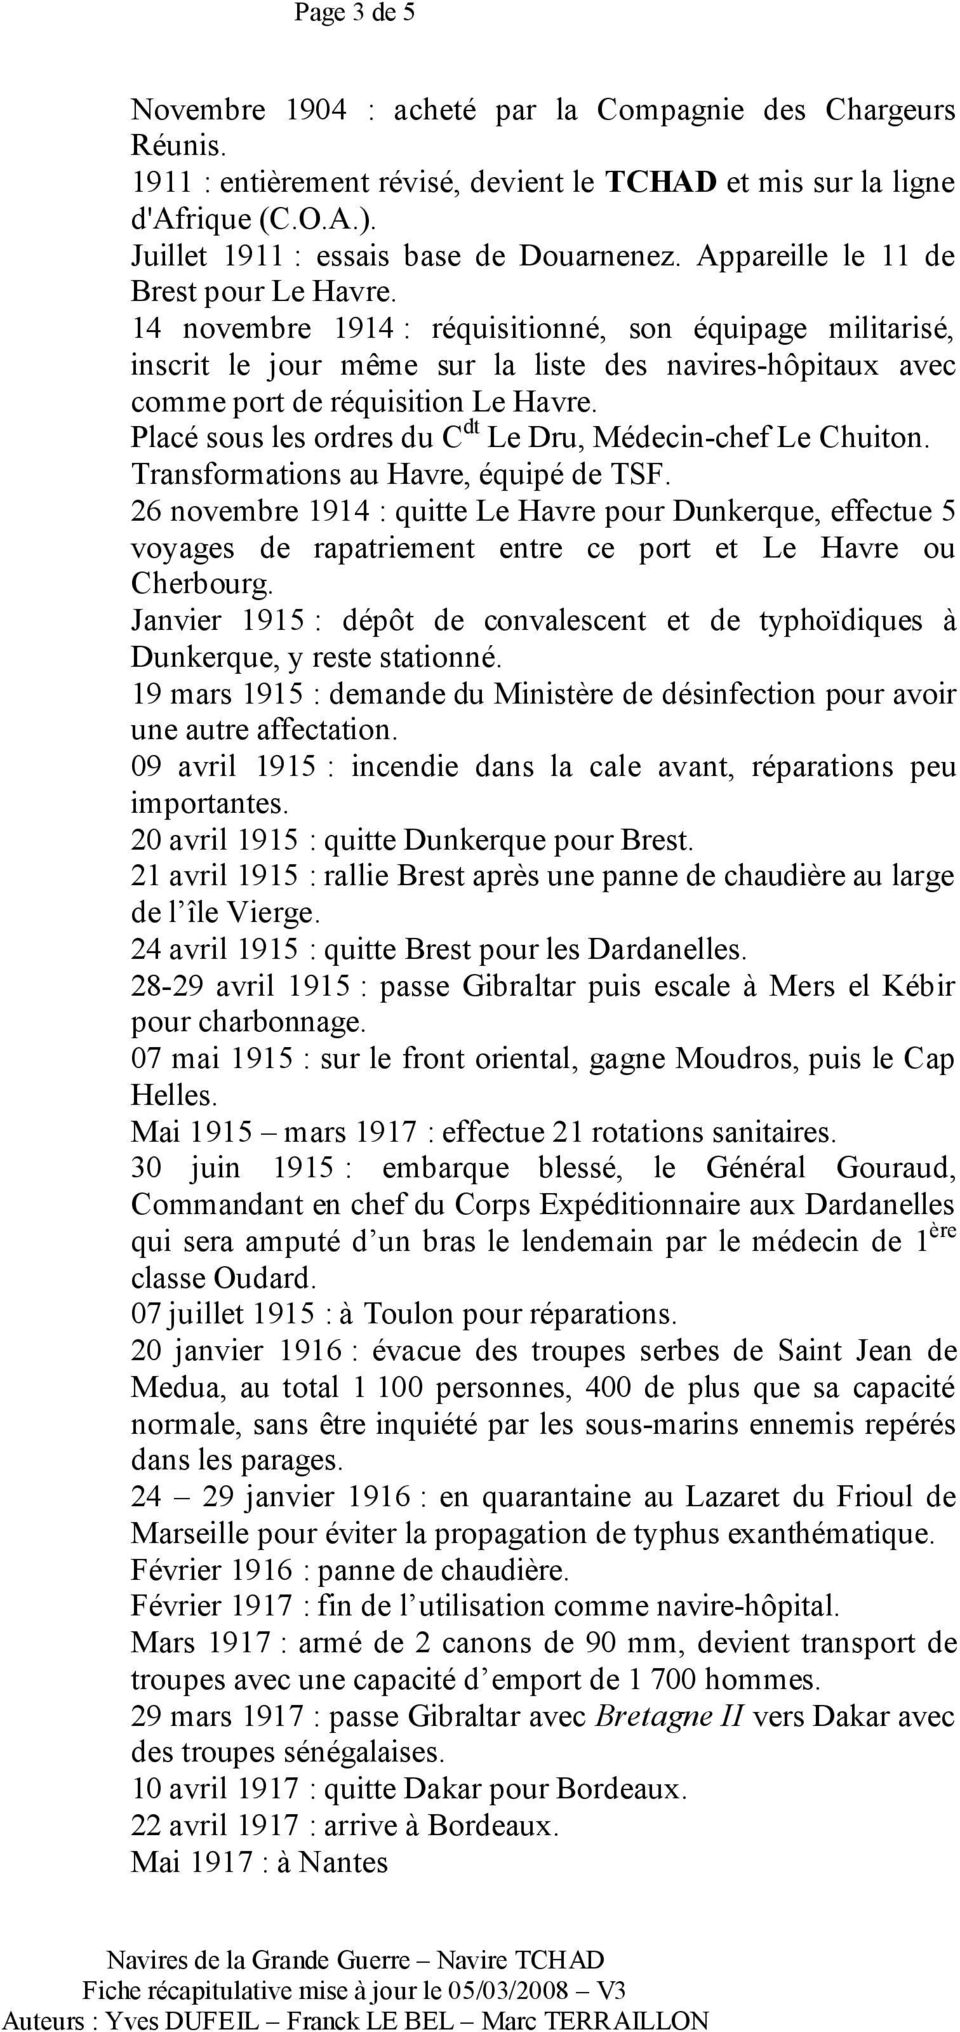 Placé sous les ordres du C dt Le Dru, Médecin-chef Le Chuiton. Transformations au Havre, équipé de TSF.